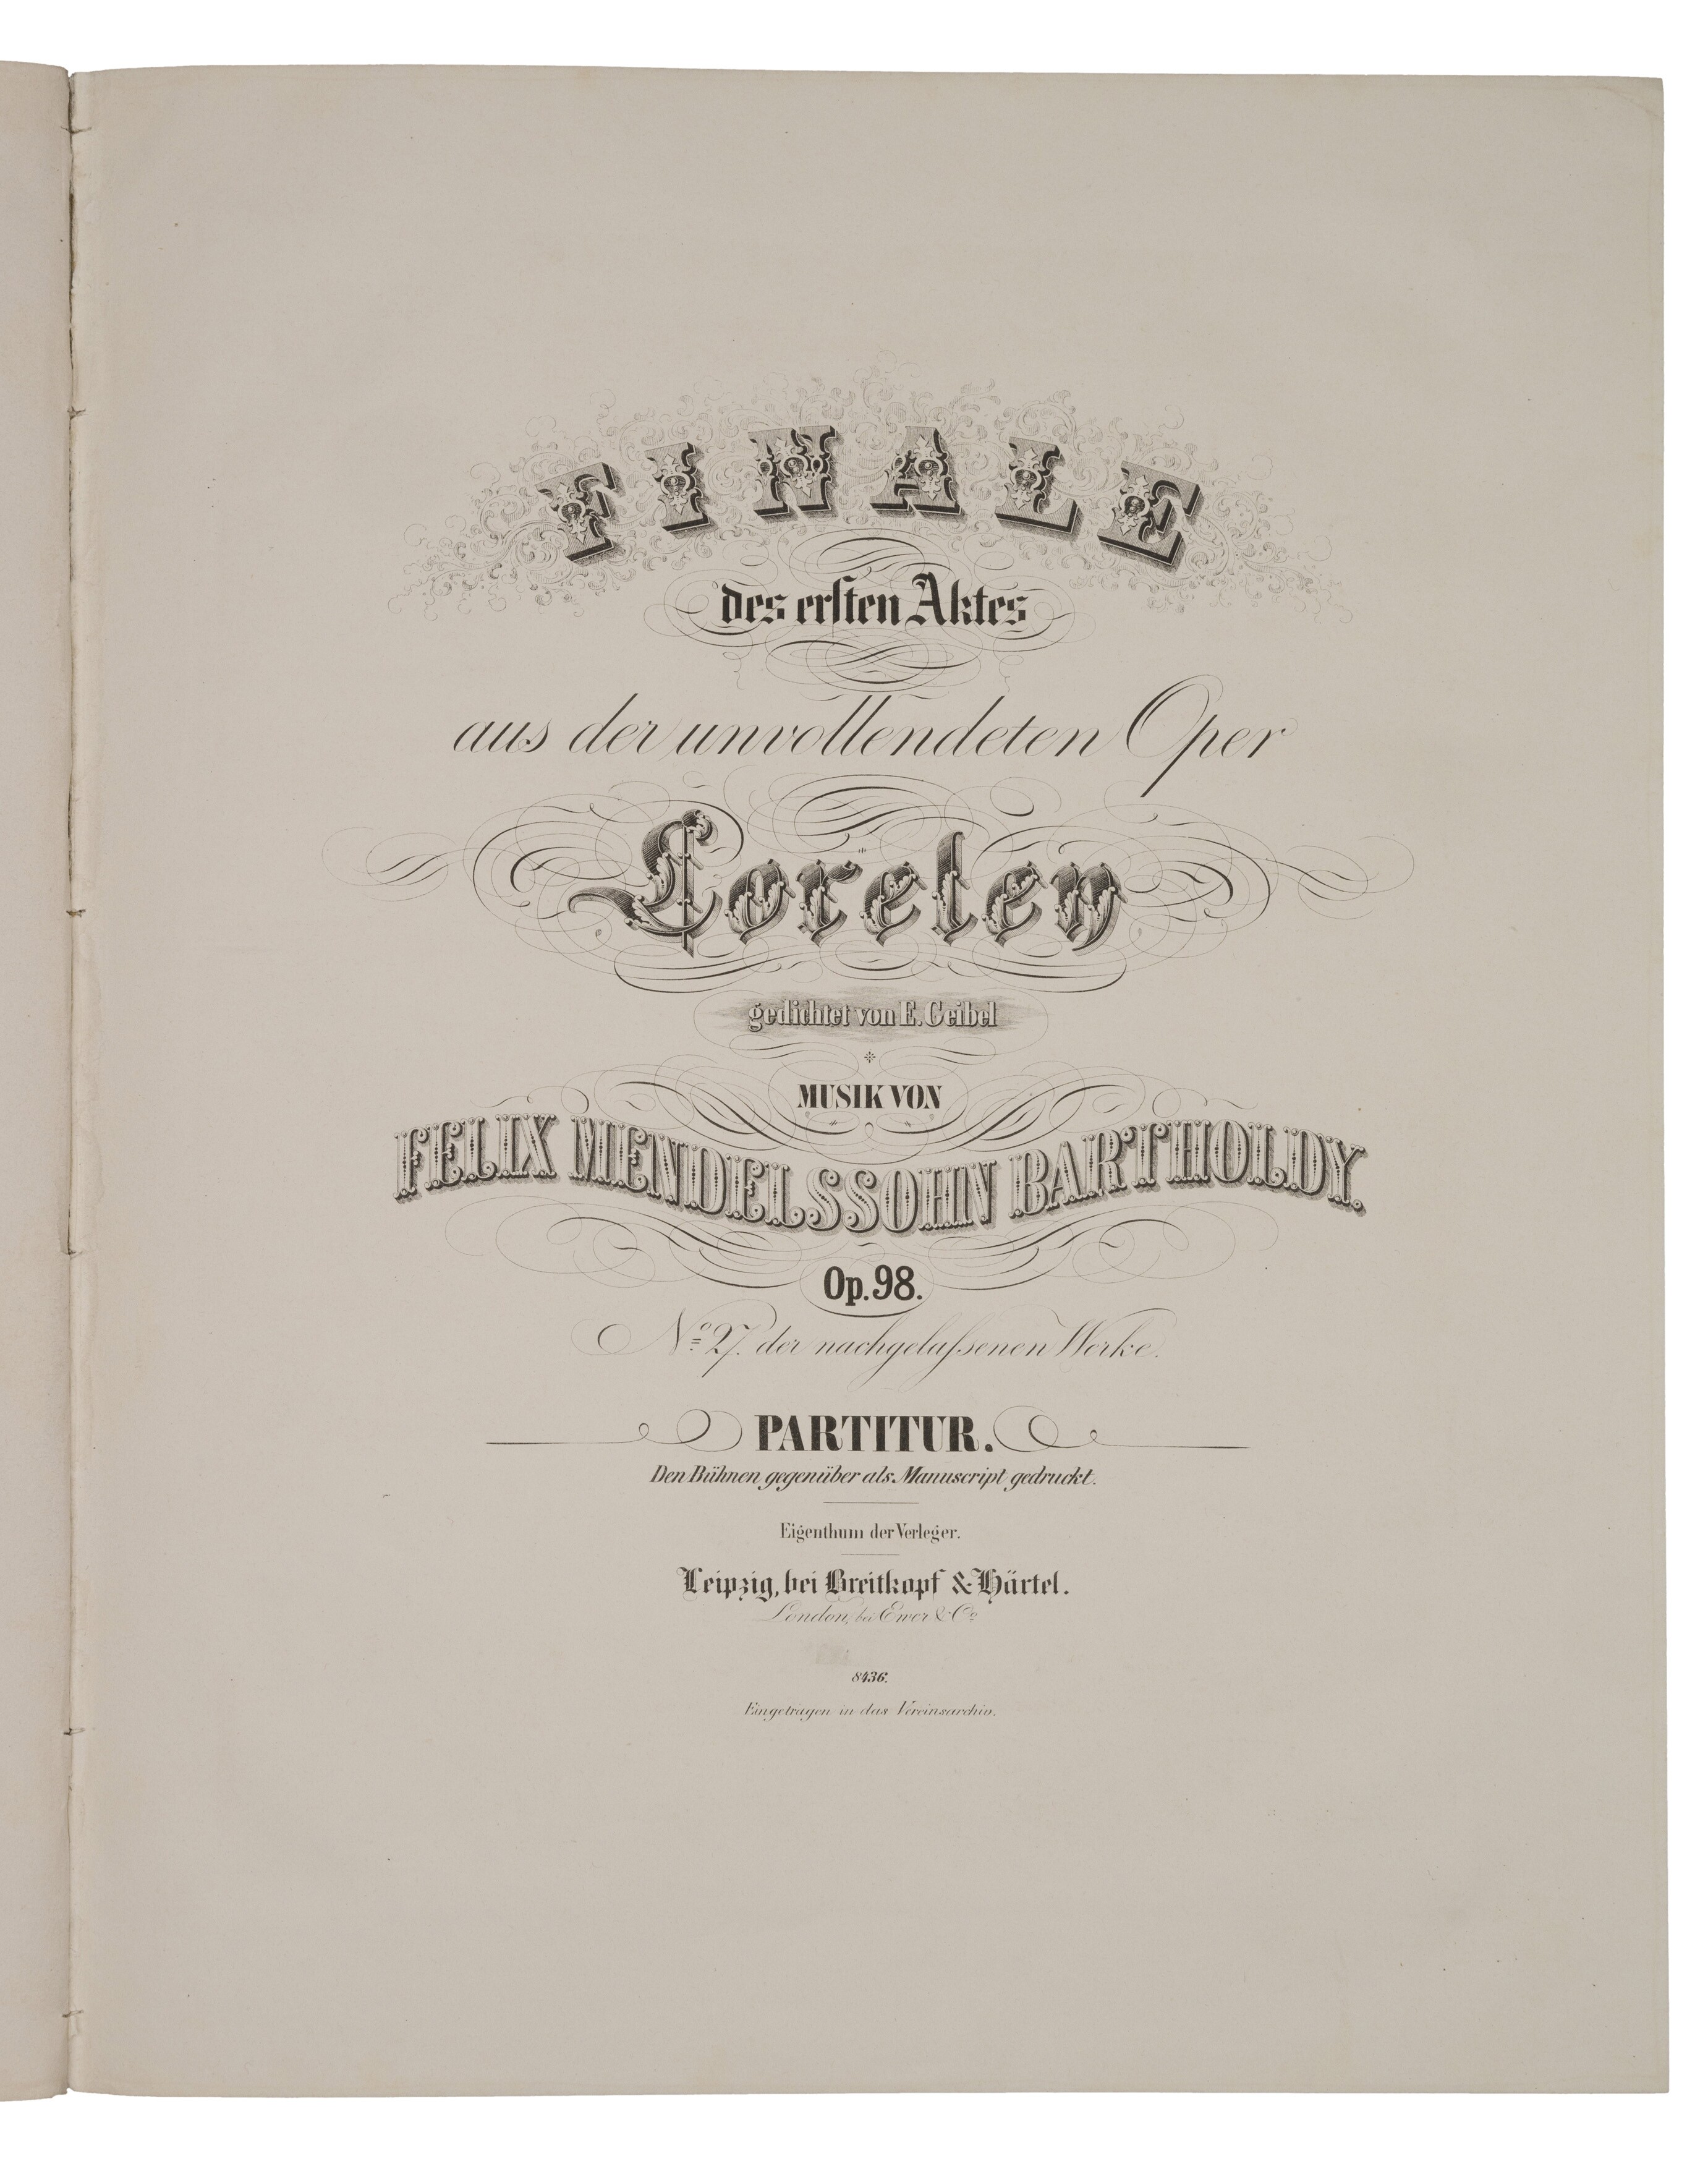 Felix Mendelssohn Bartholdy, Die Lorelei op. 98 (Felix-Mendelssohn-Bartholdy-Stiftung RR-F)